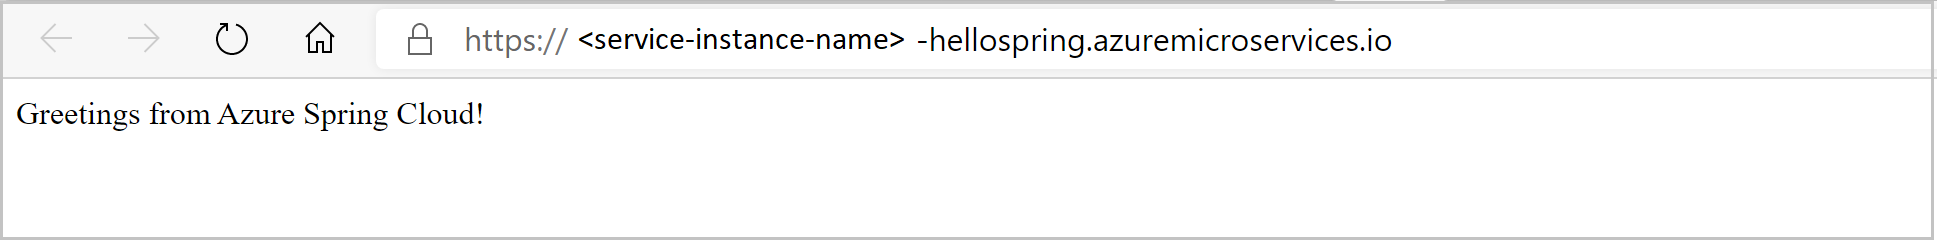 Captura de tela do aplicativo hello spring como visto no navegador.